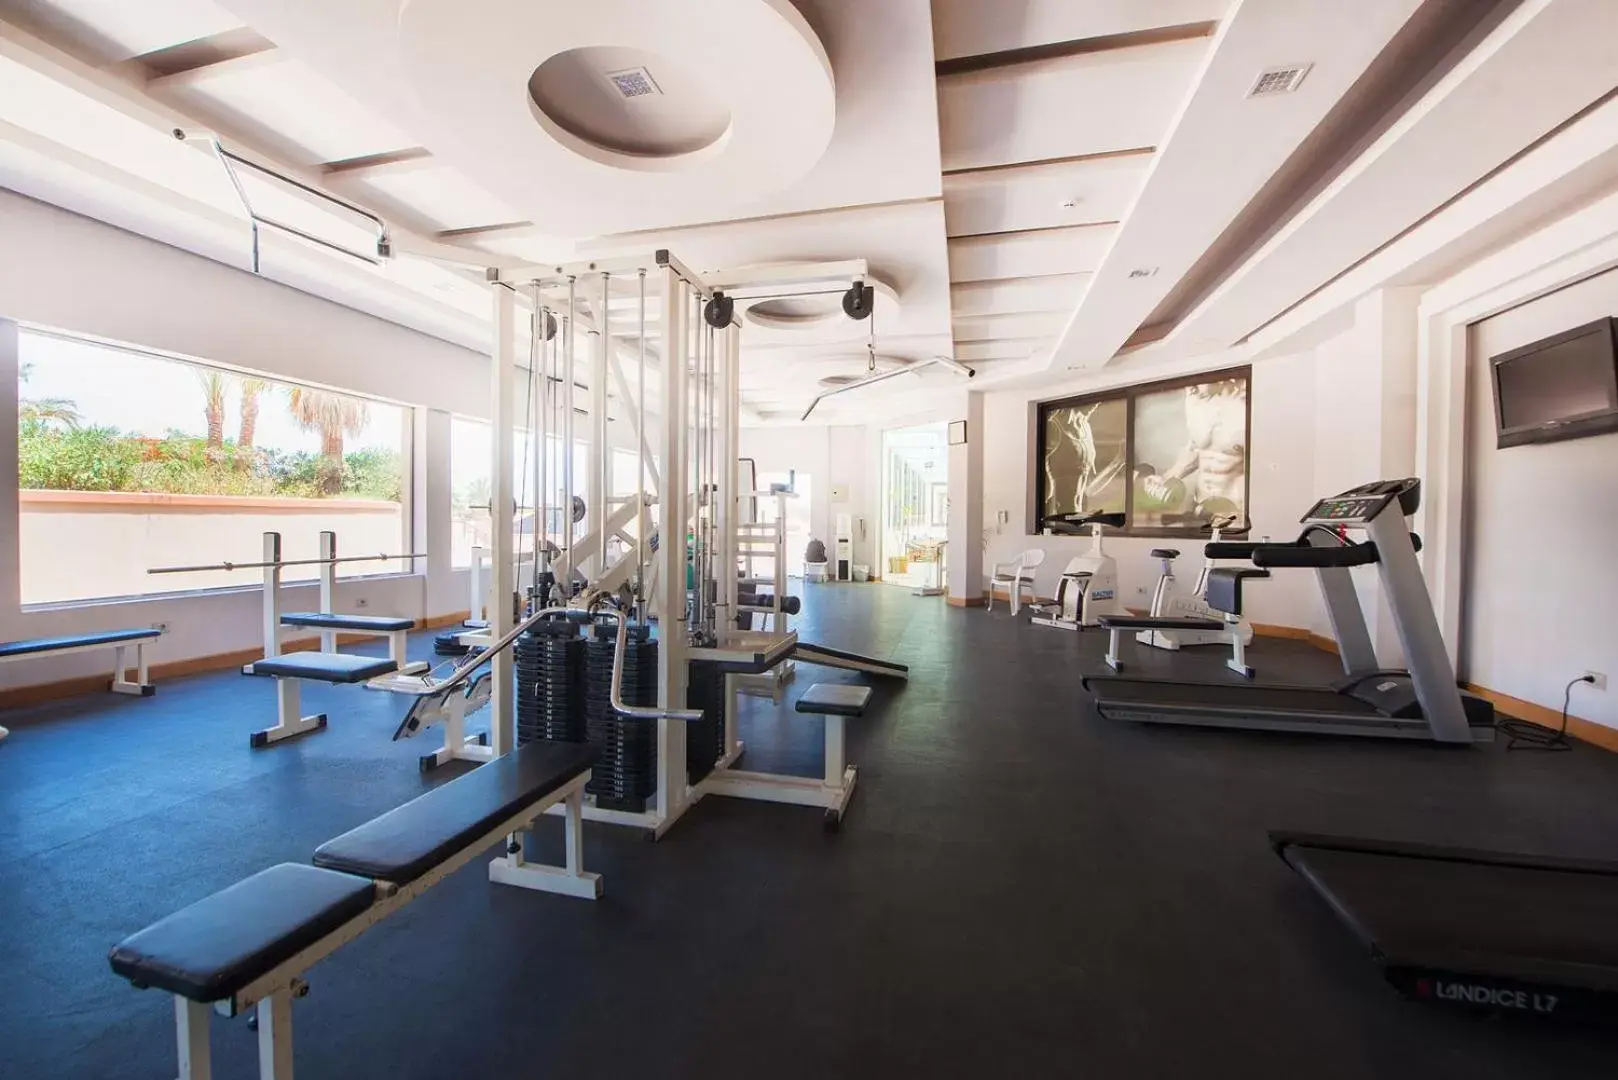 Fitness centre/facilities, Fitness Center/Facilities in Pharaoh Azur Resort